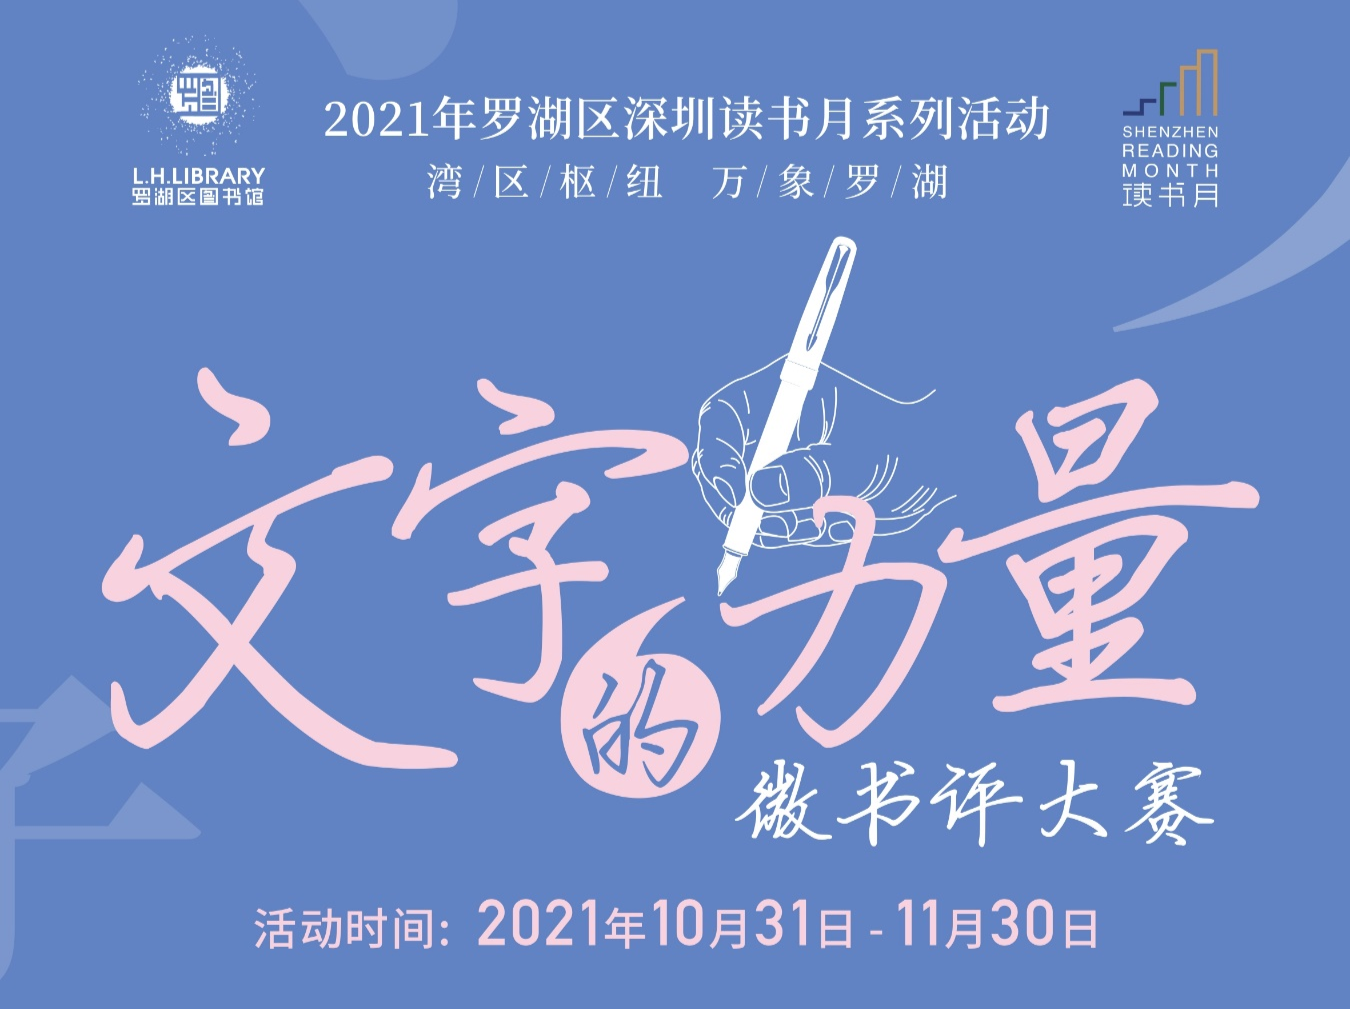 2021年深圳读书月罗湖区系列活动——“文字的力量”微书评大赛启动